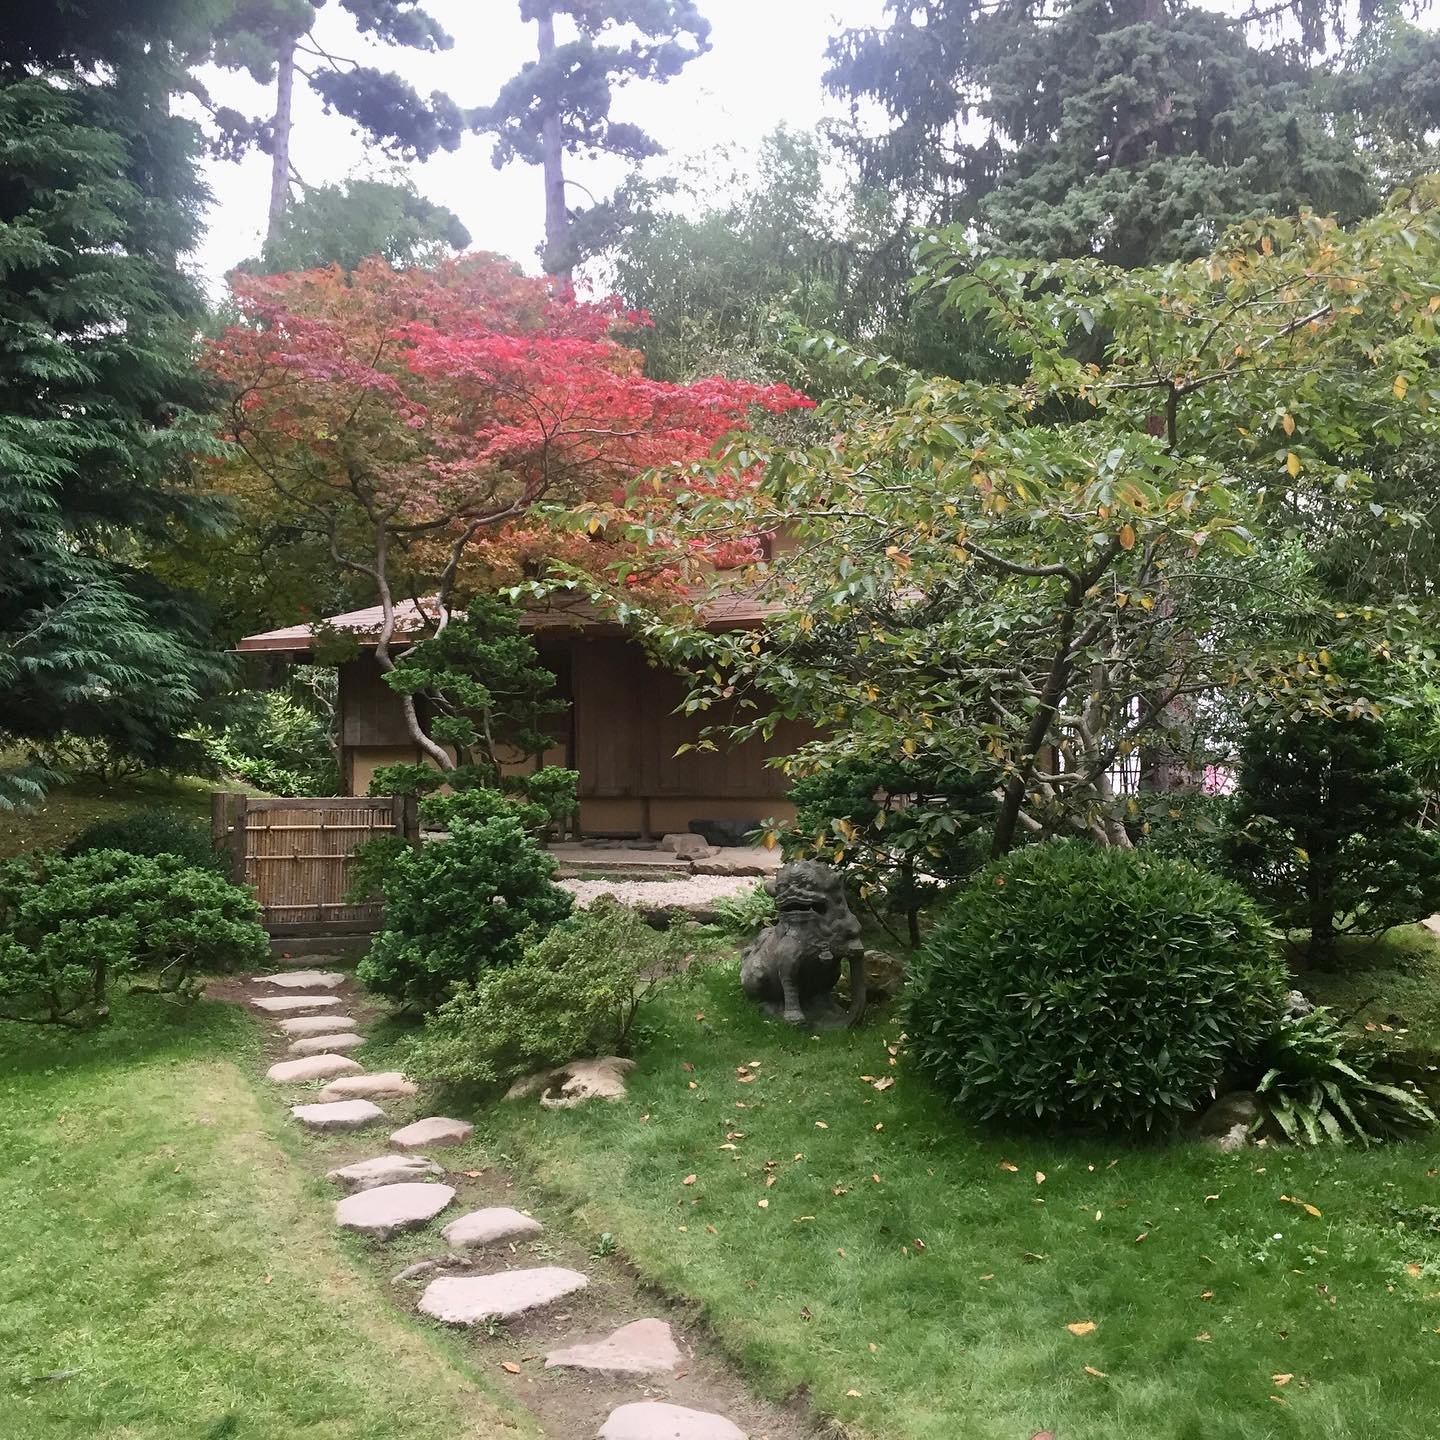 Albert-Kahn-Japanese-Gardens.jpg.jpg